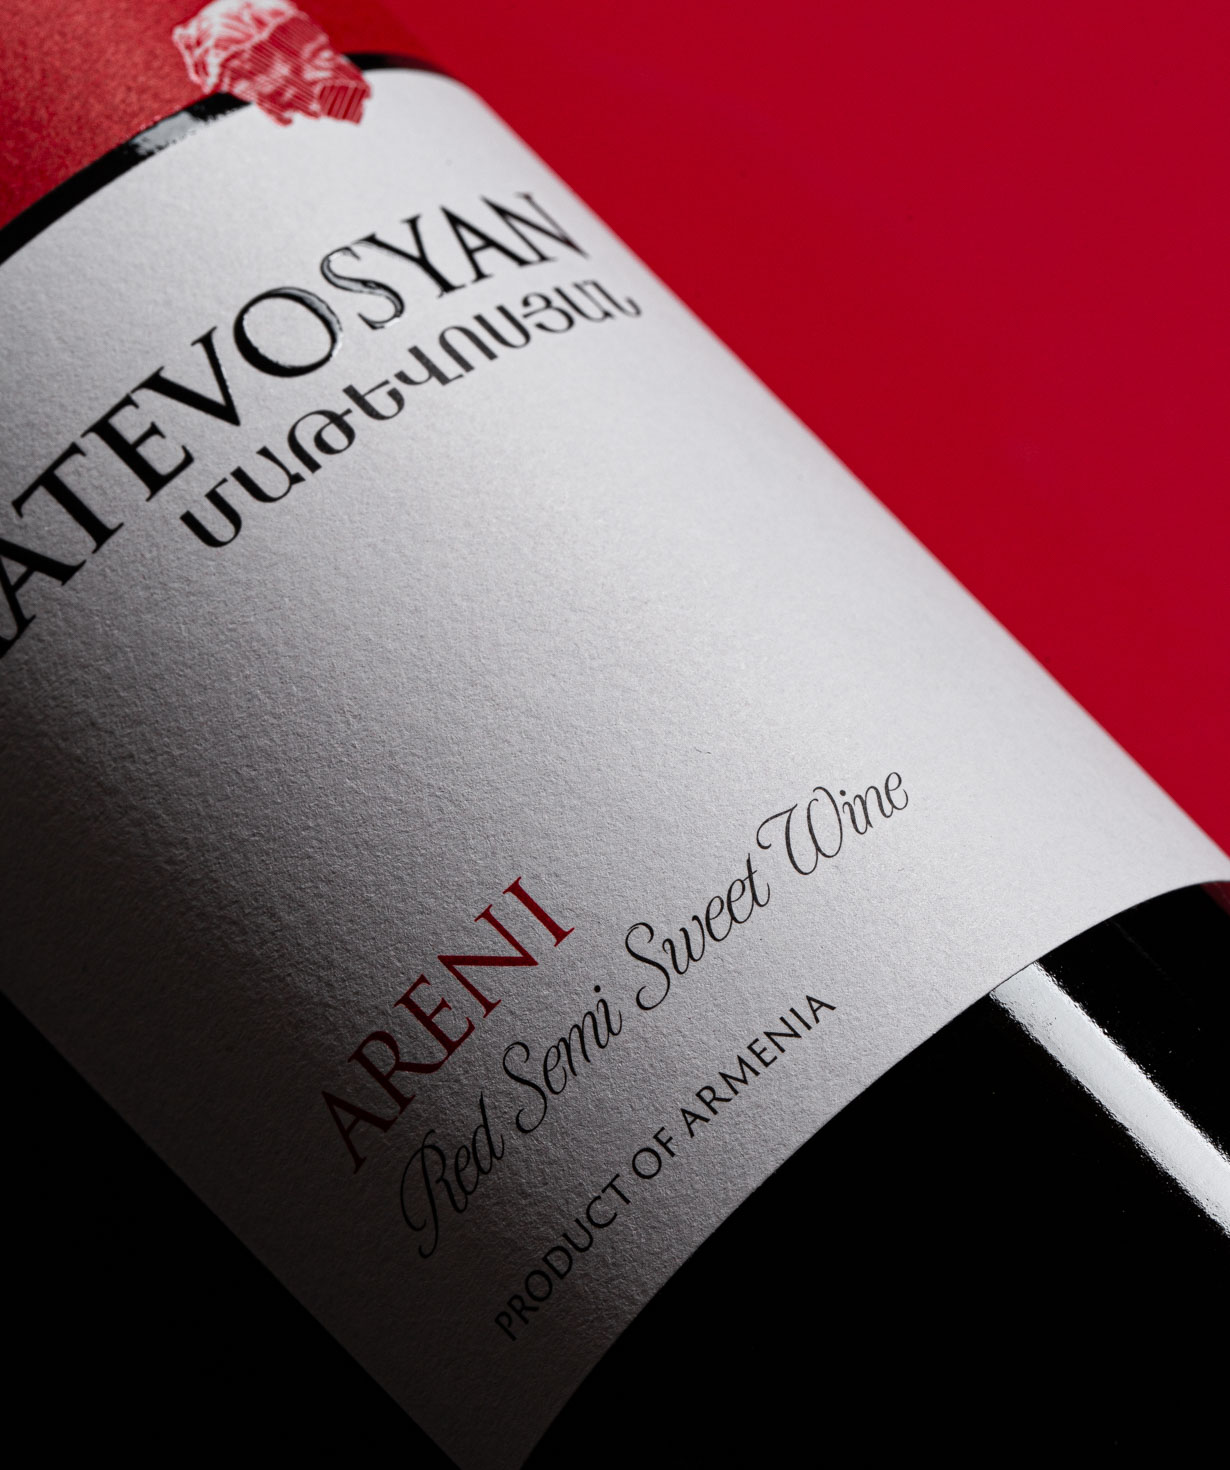 Вино «Matevosyan» Арени, красное, полусладкое, 9%, 750 мл